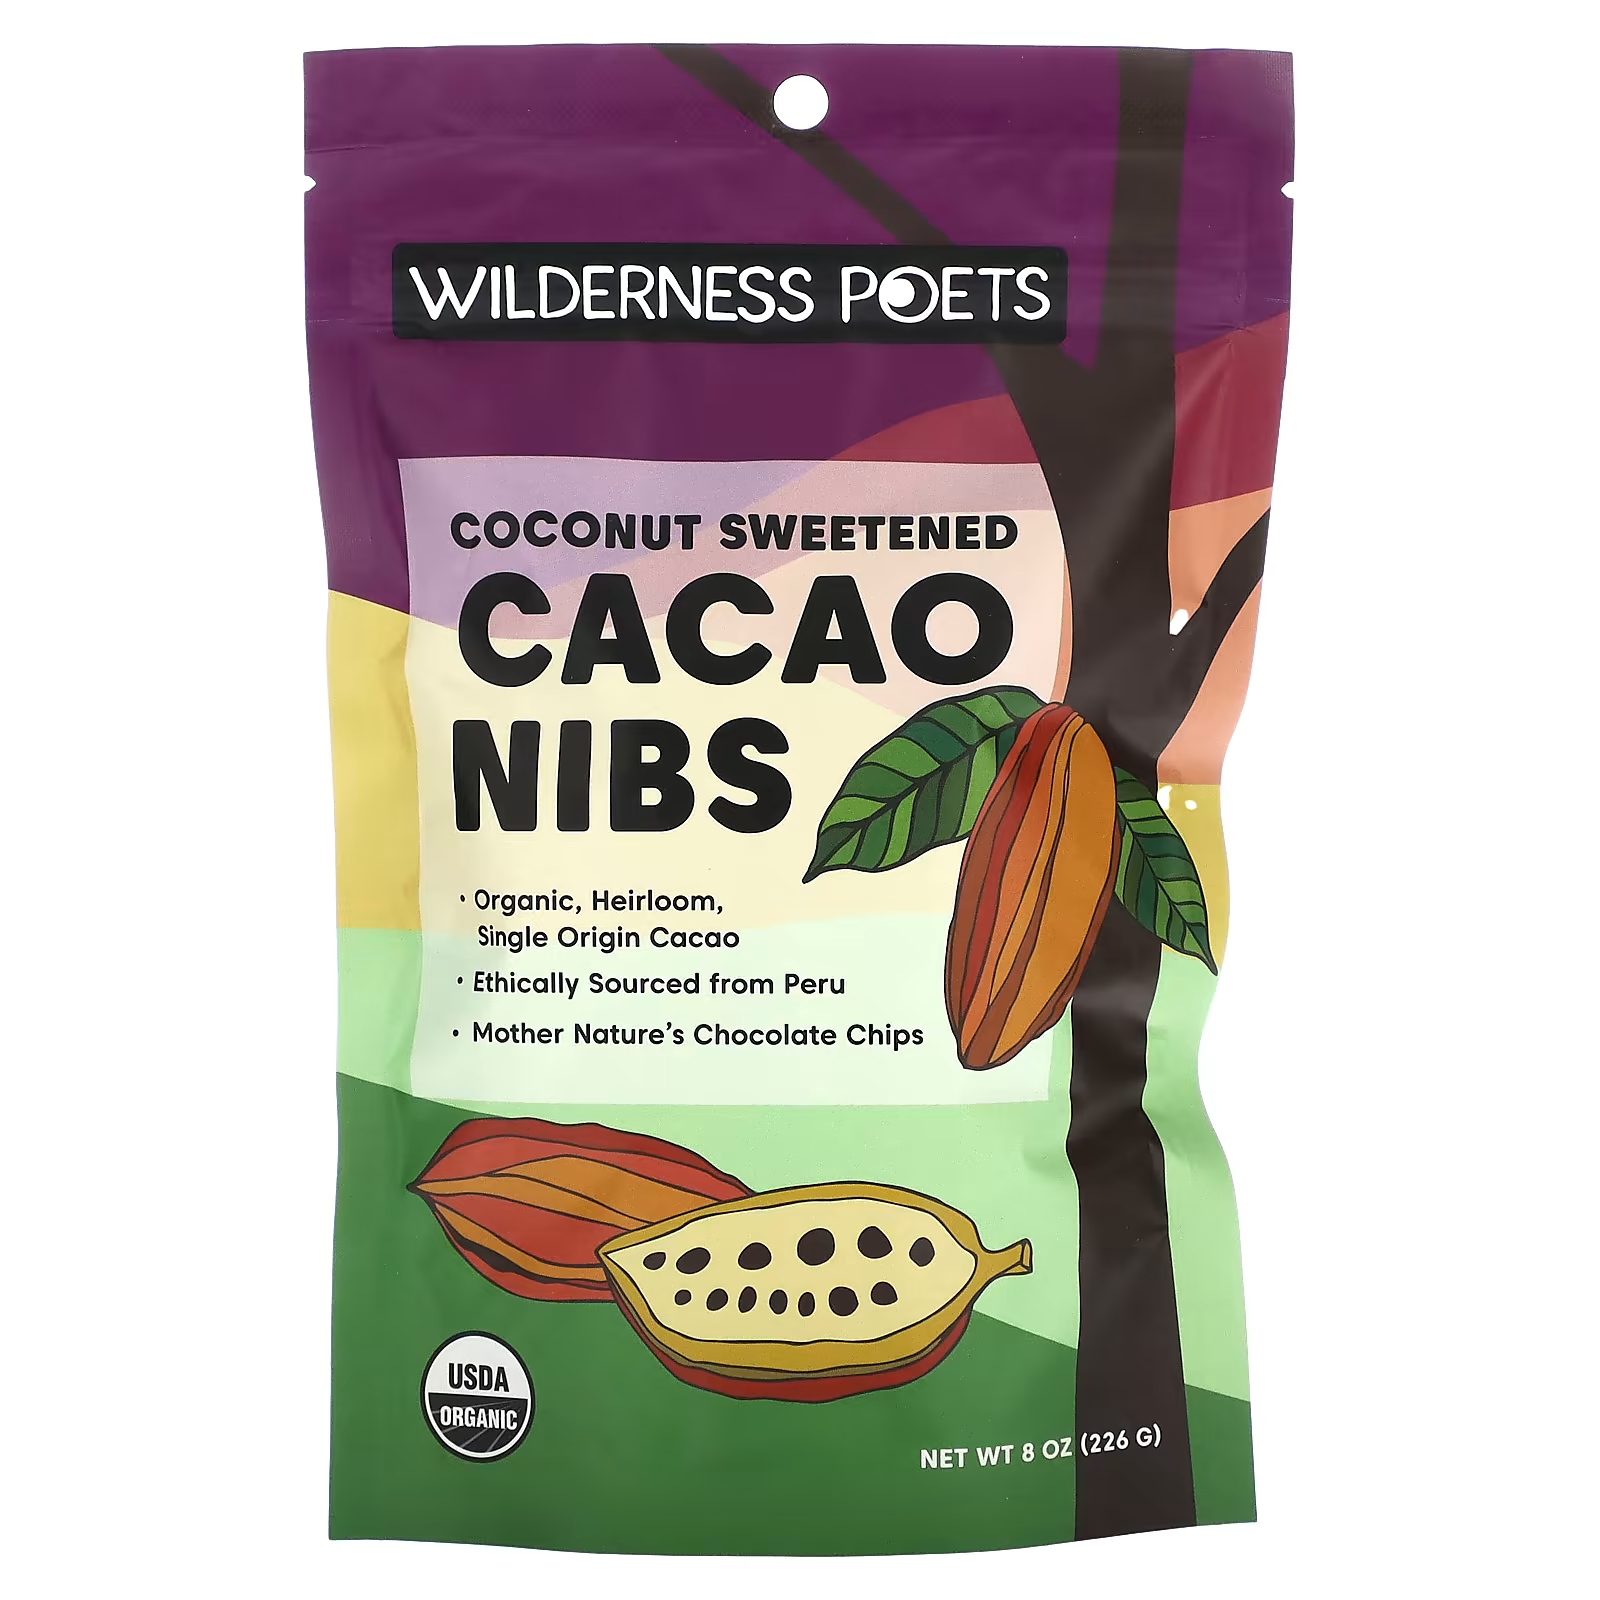 Какао-бобы органические Wilderness Poets подслащенные кокосом, 226 г органическая куркума wilderness poets из коста рики 226 г